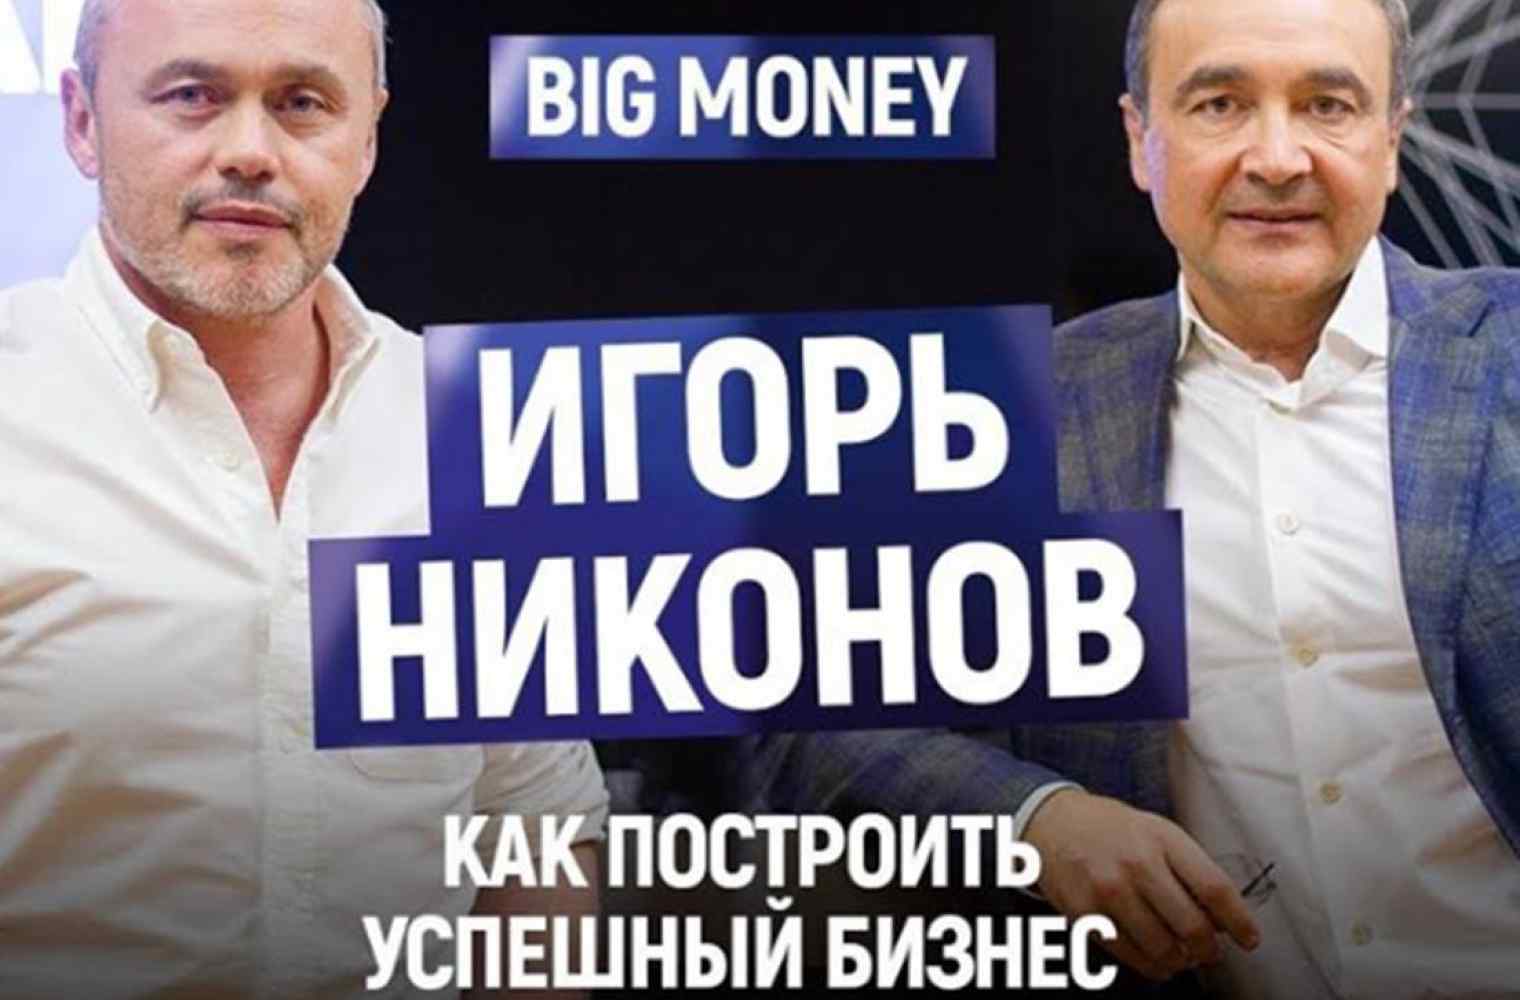 Интервью Игоря Никонова для проекта BigMoney с Евгением Черняком